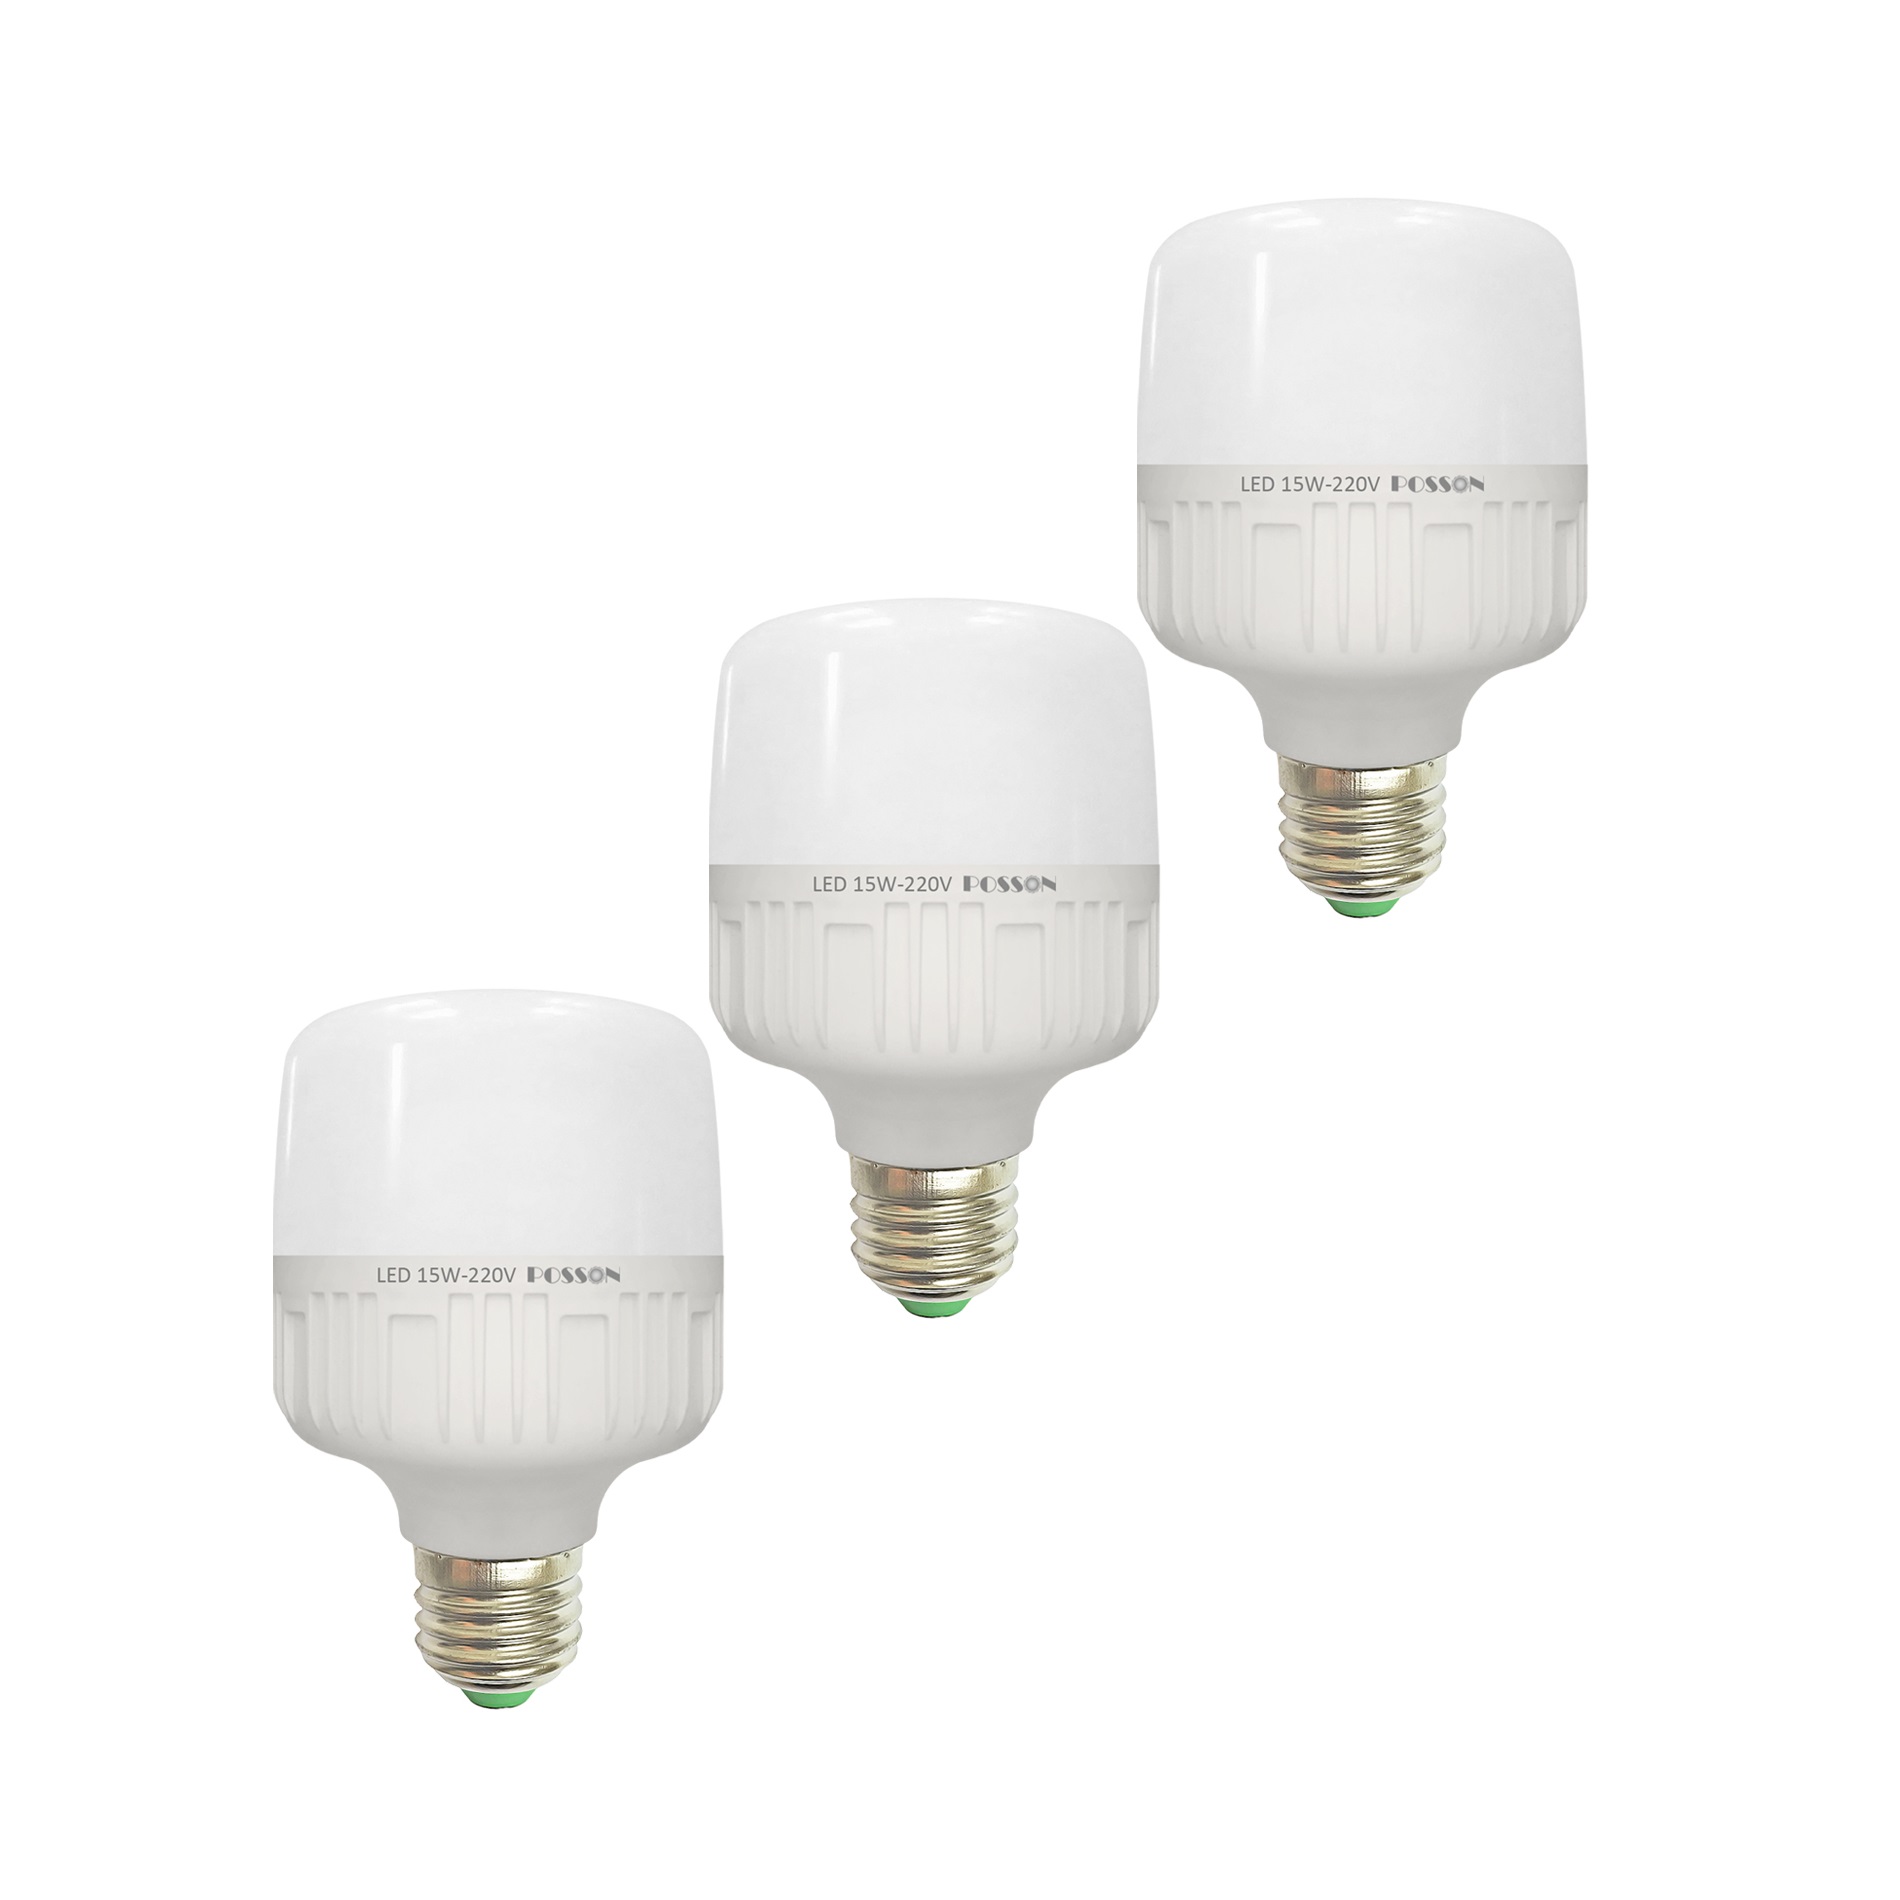 3 Bóng đèn Led bup trụ 15w bulb siêu sáng tiết kiệm điện kín chống nước Posson LC-H15x